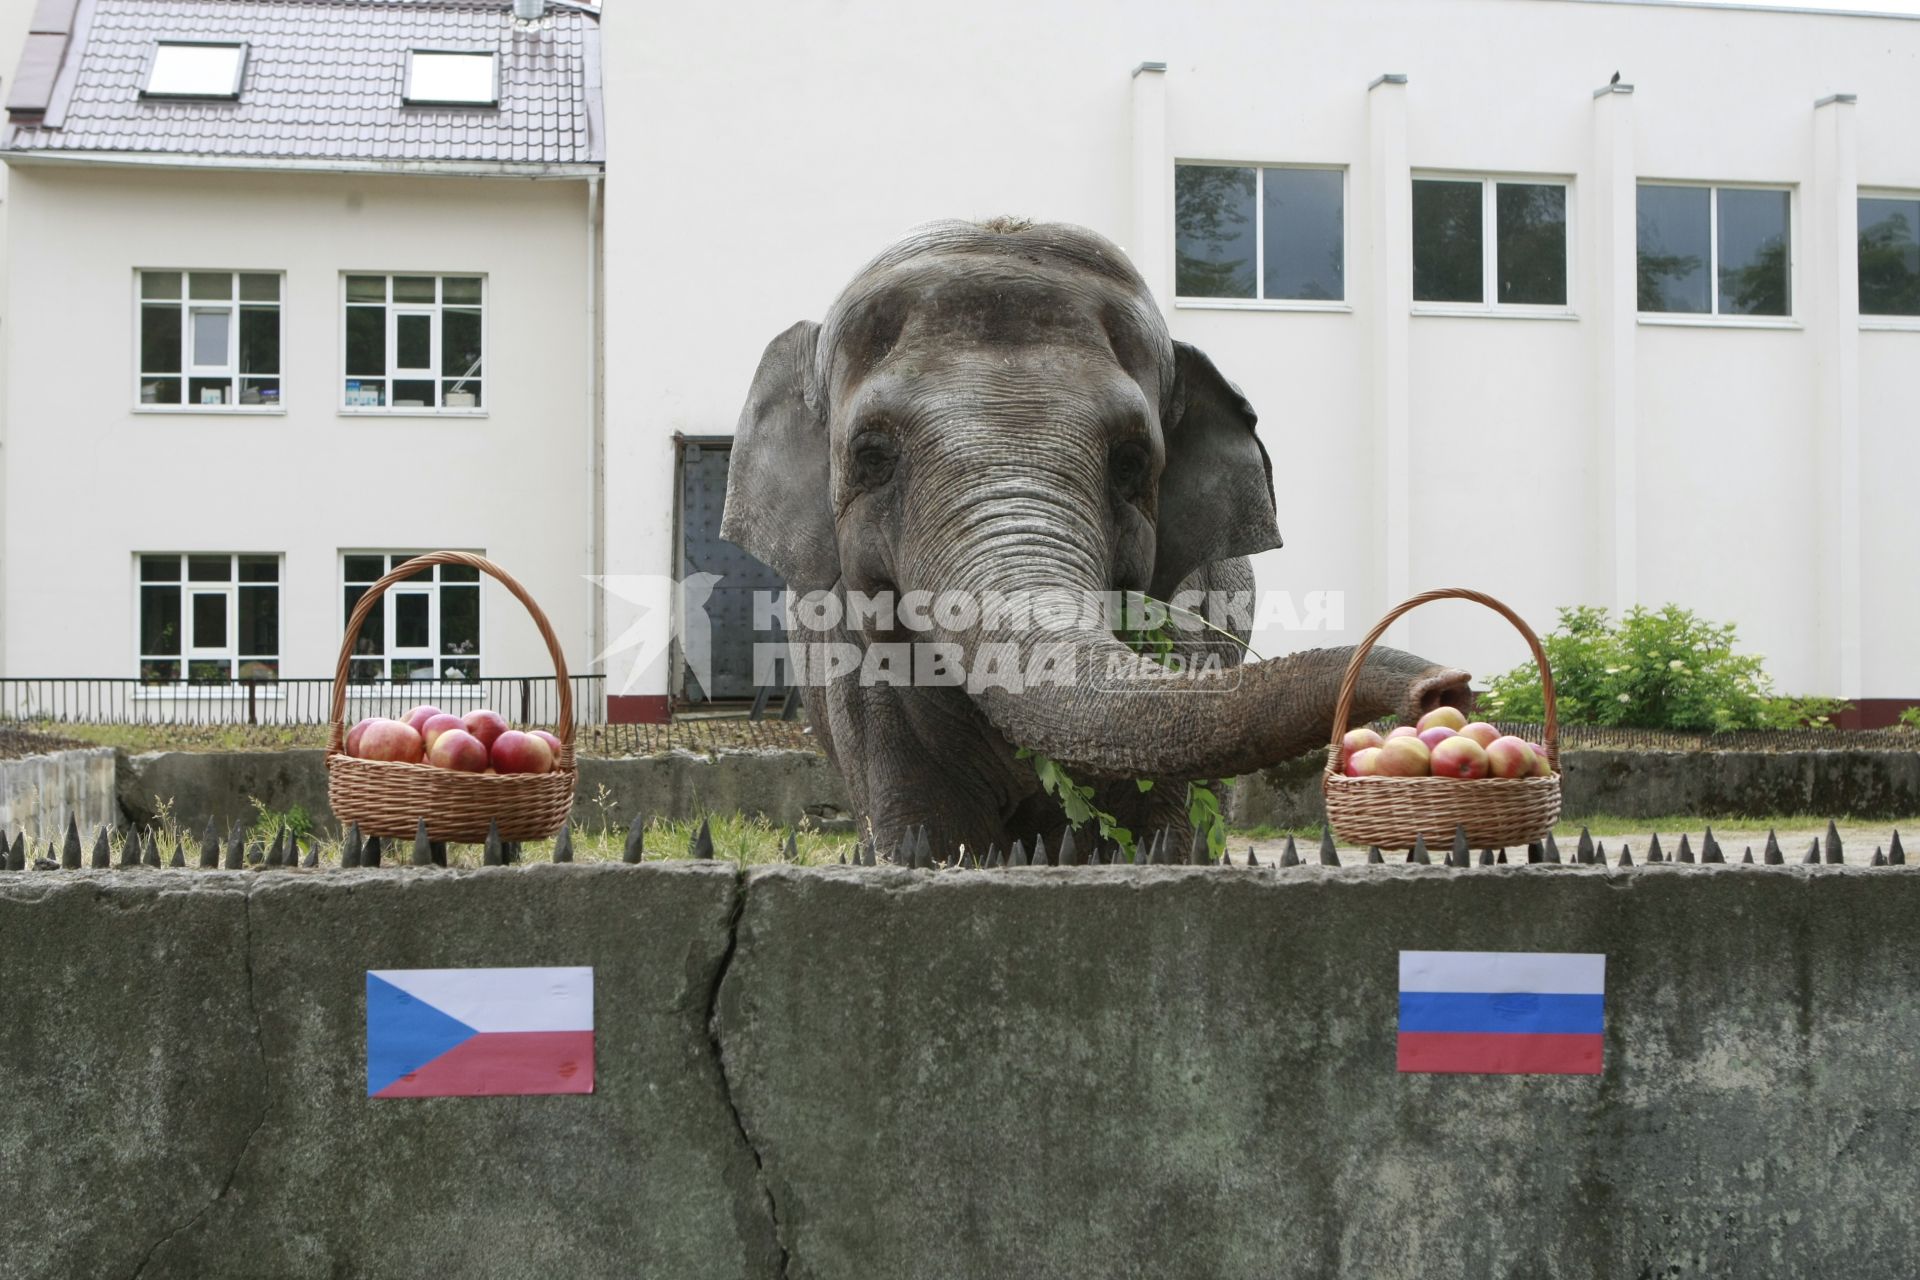 Калининградская слониха Преголя предсказала победу команды Чехии в матче чемпионата Европы по футболу.